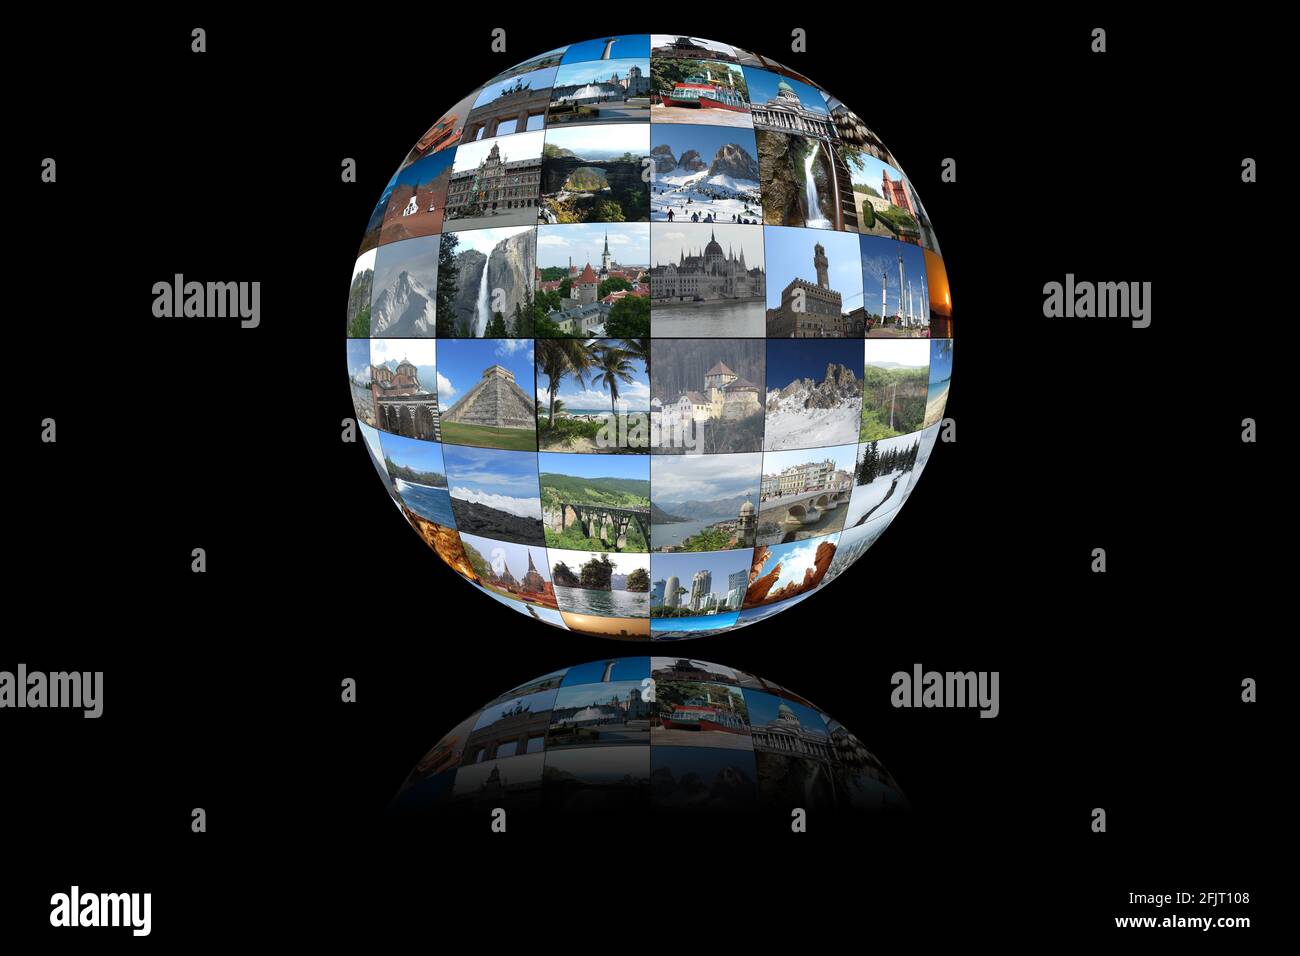 Kugelförmige Collage aus kleinen Fotos von beliebten touristischen Zielen und Sehenswürdigkeiten auf der ganzen Welt. Kugel-/Erdform mit einer Reflexion am Boden. Stockfoto